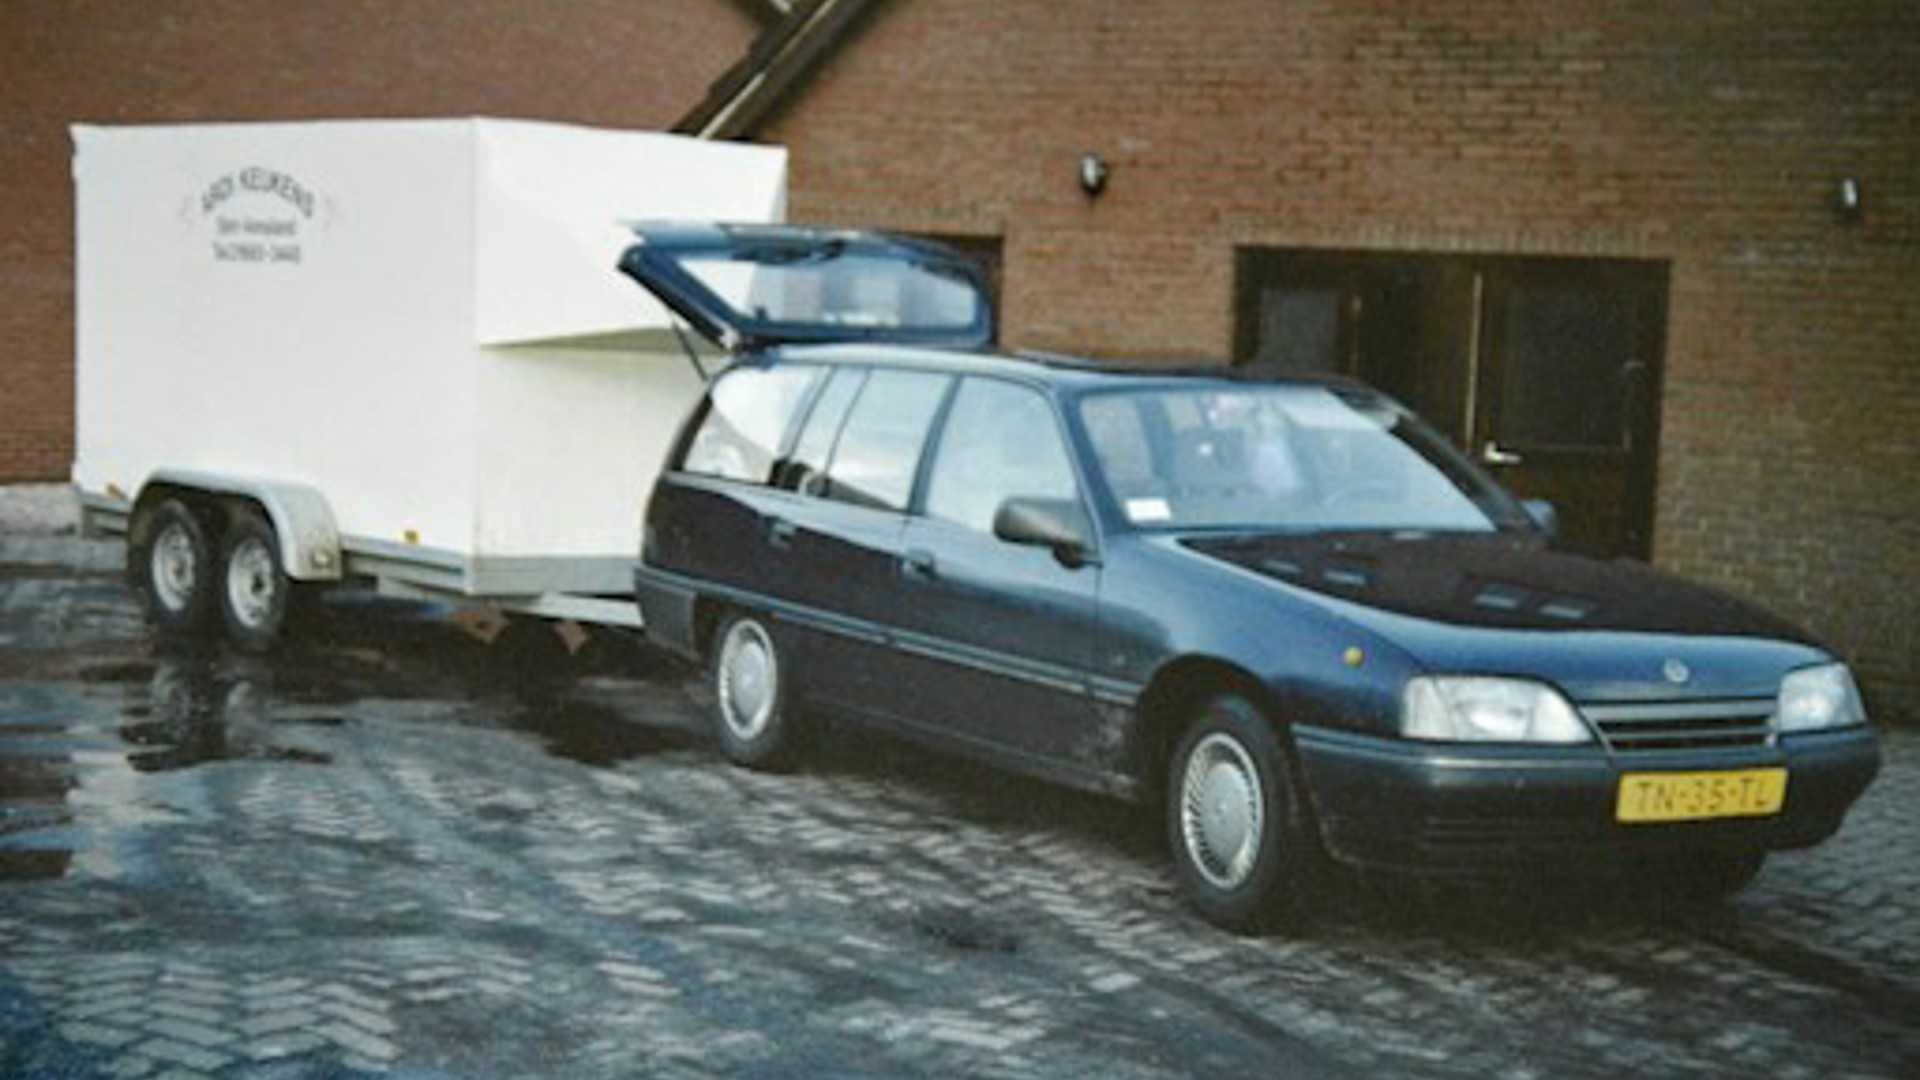 DB Keukens in 1991. Auto met aanhanger.